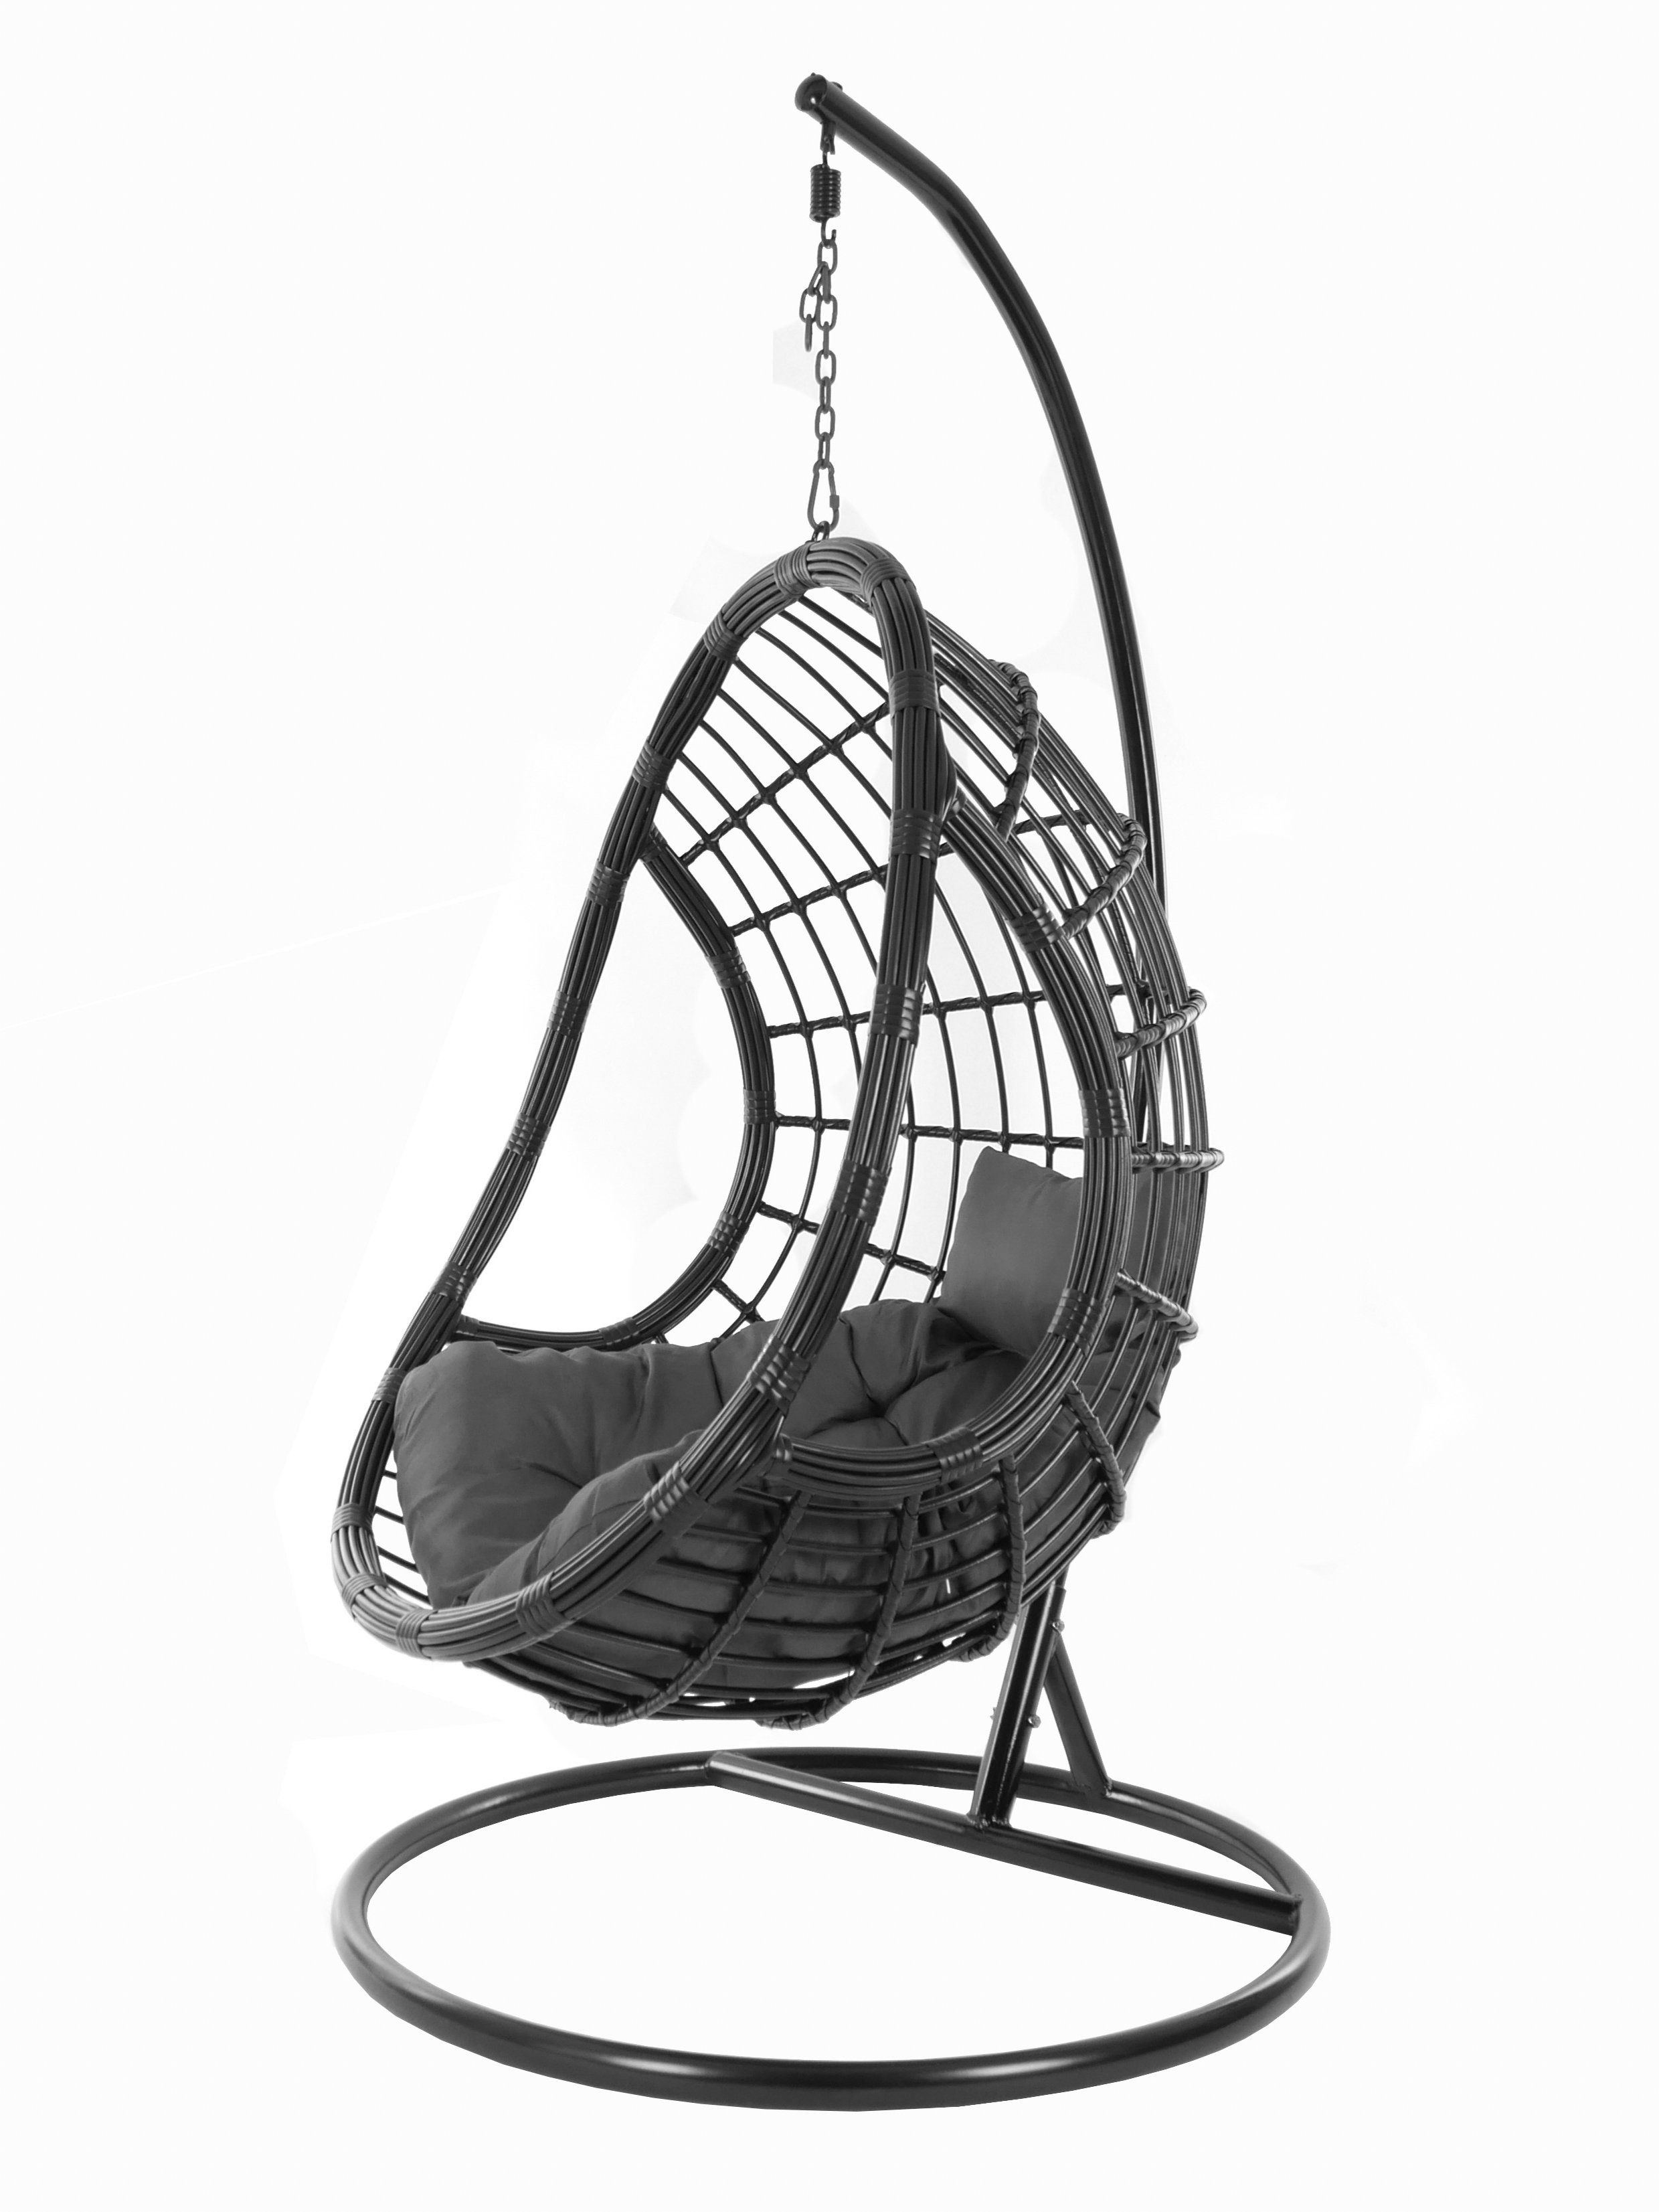 Loungemöbel, Swing Hängesessel edles und Schwebesessel, Hängesessel PALMANOVA Chair, Kissen, shadow) KIDEO (8999 schwarz, dunkelgrau black, Gestell Design mit